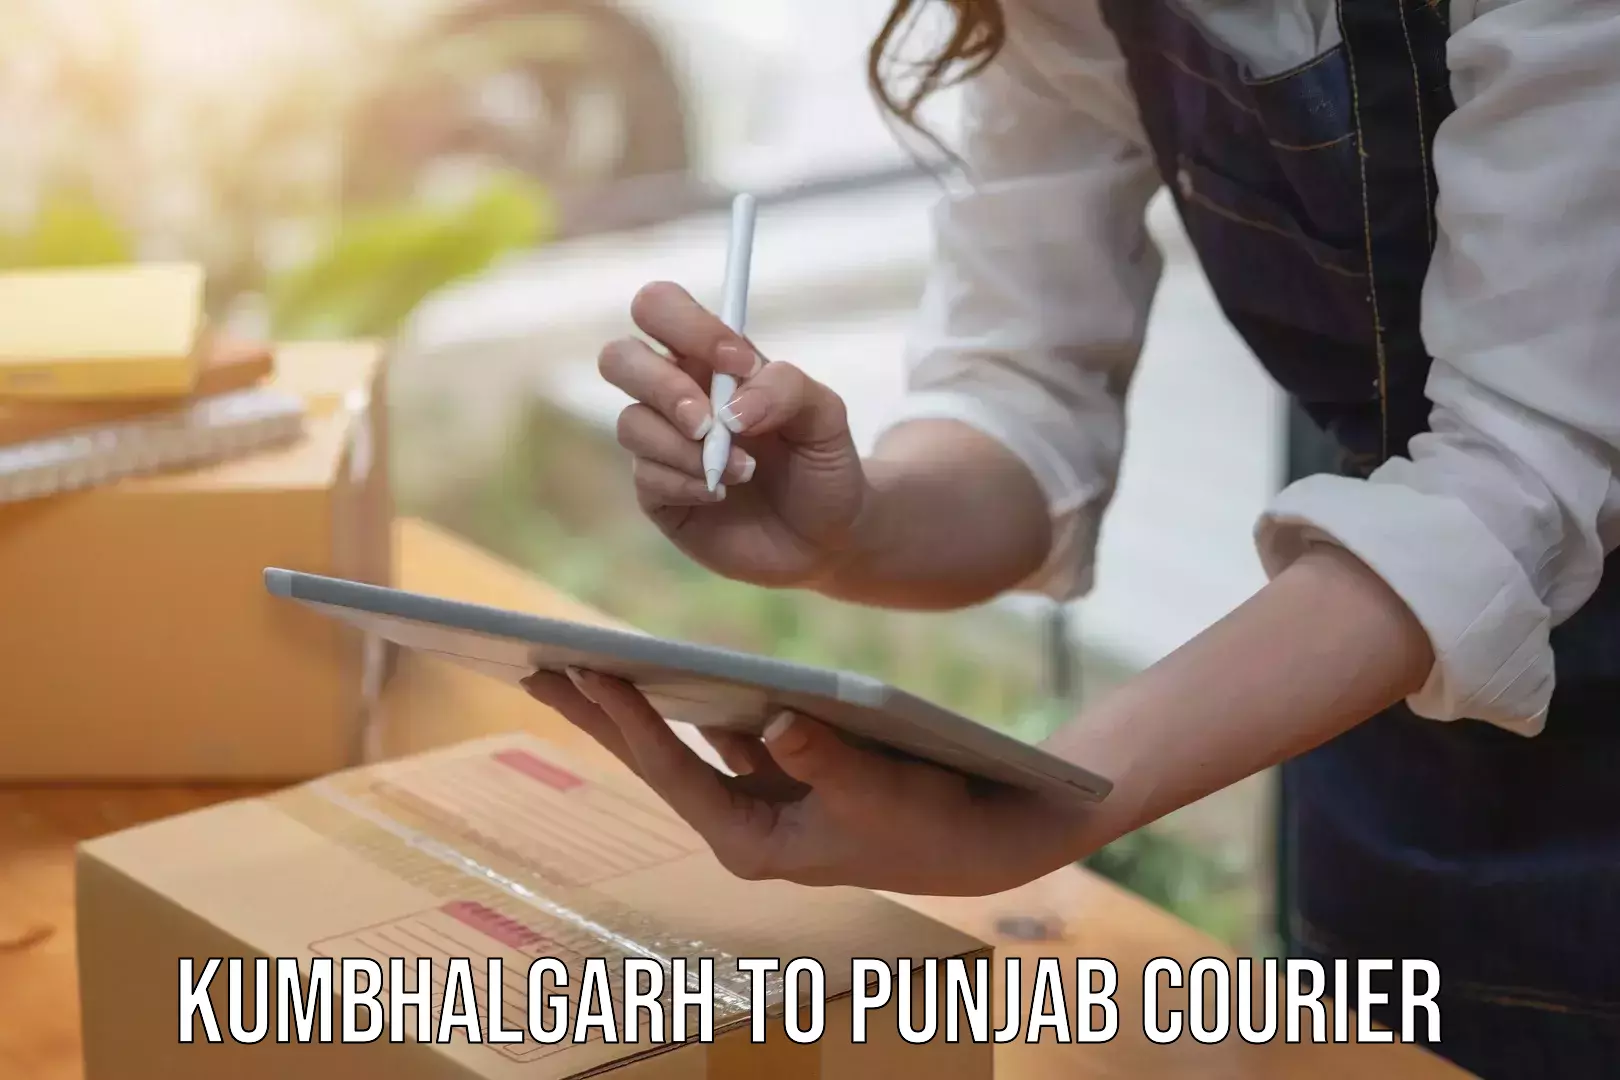 24-hour courier service Kumbhalgarh to Central University of Punjab Bathinda